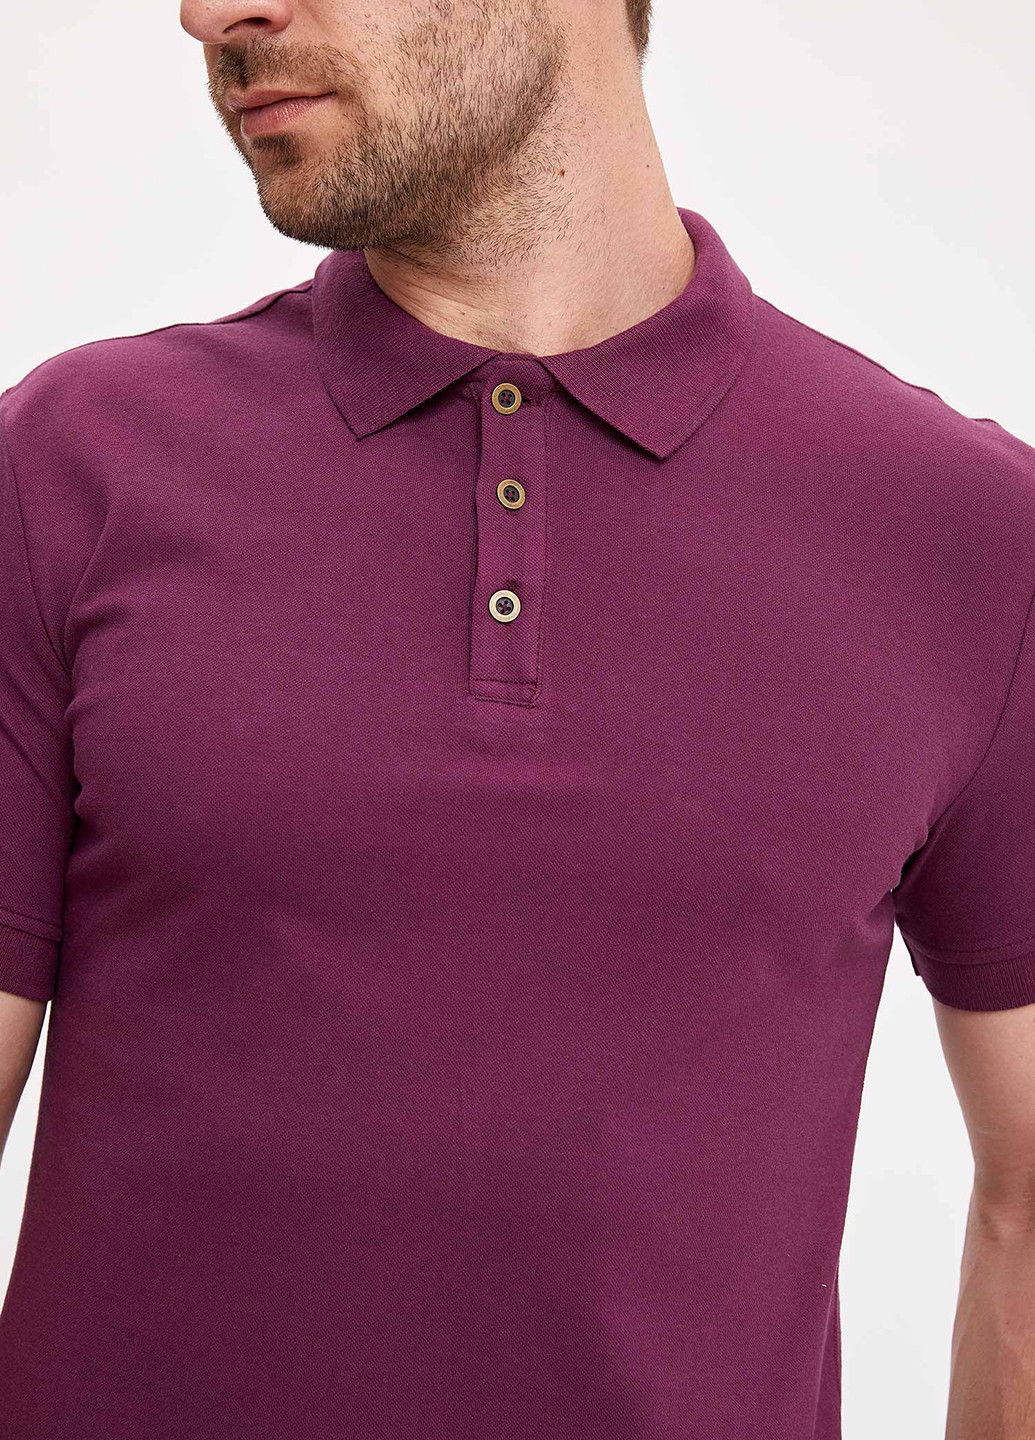 Темно-фиолетовая футболка-поло для мужчин DeFacto однотонная